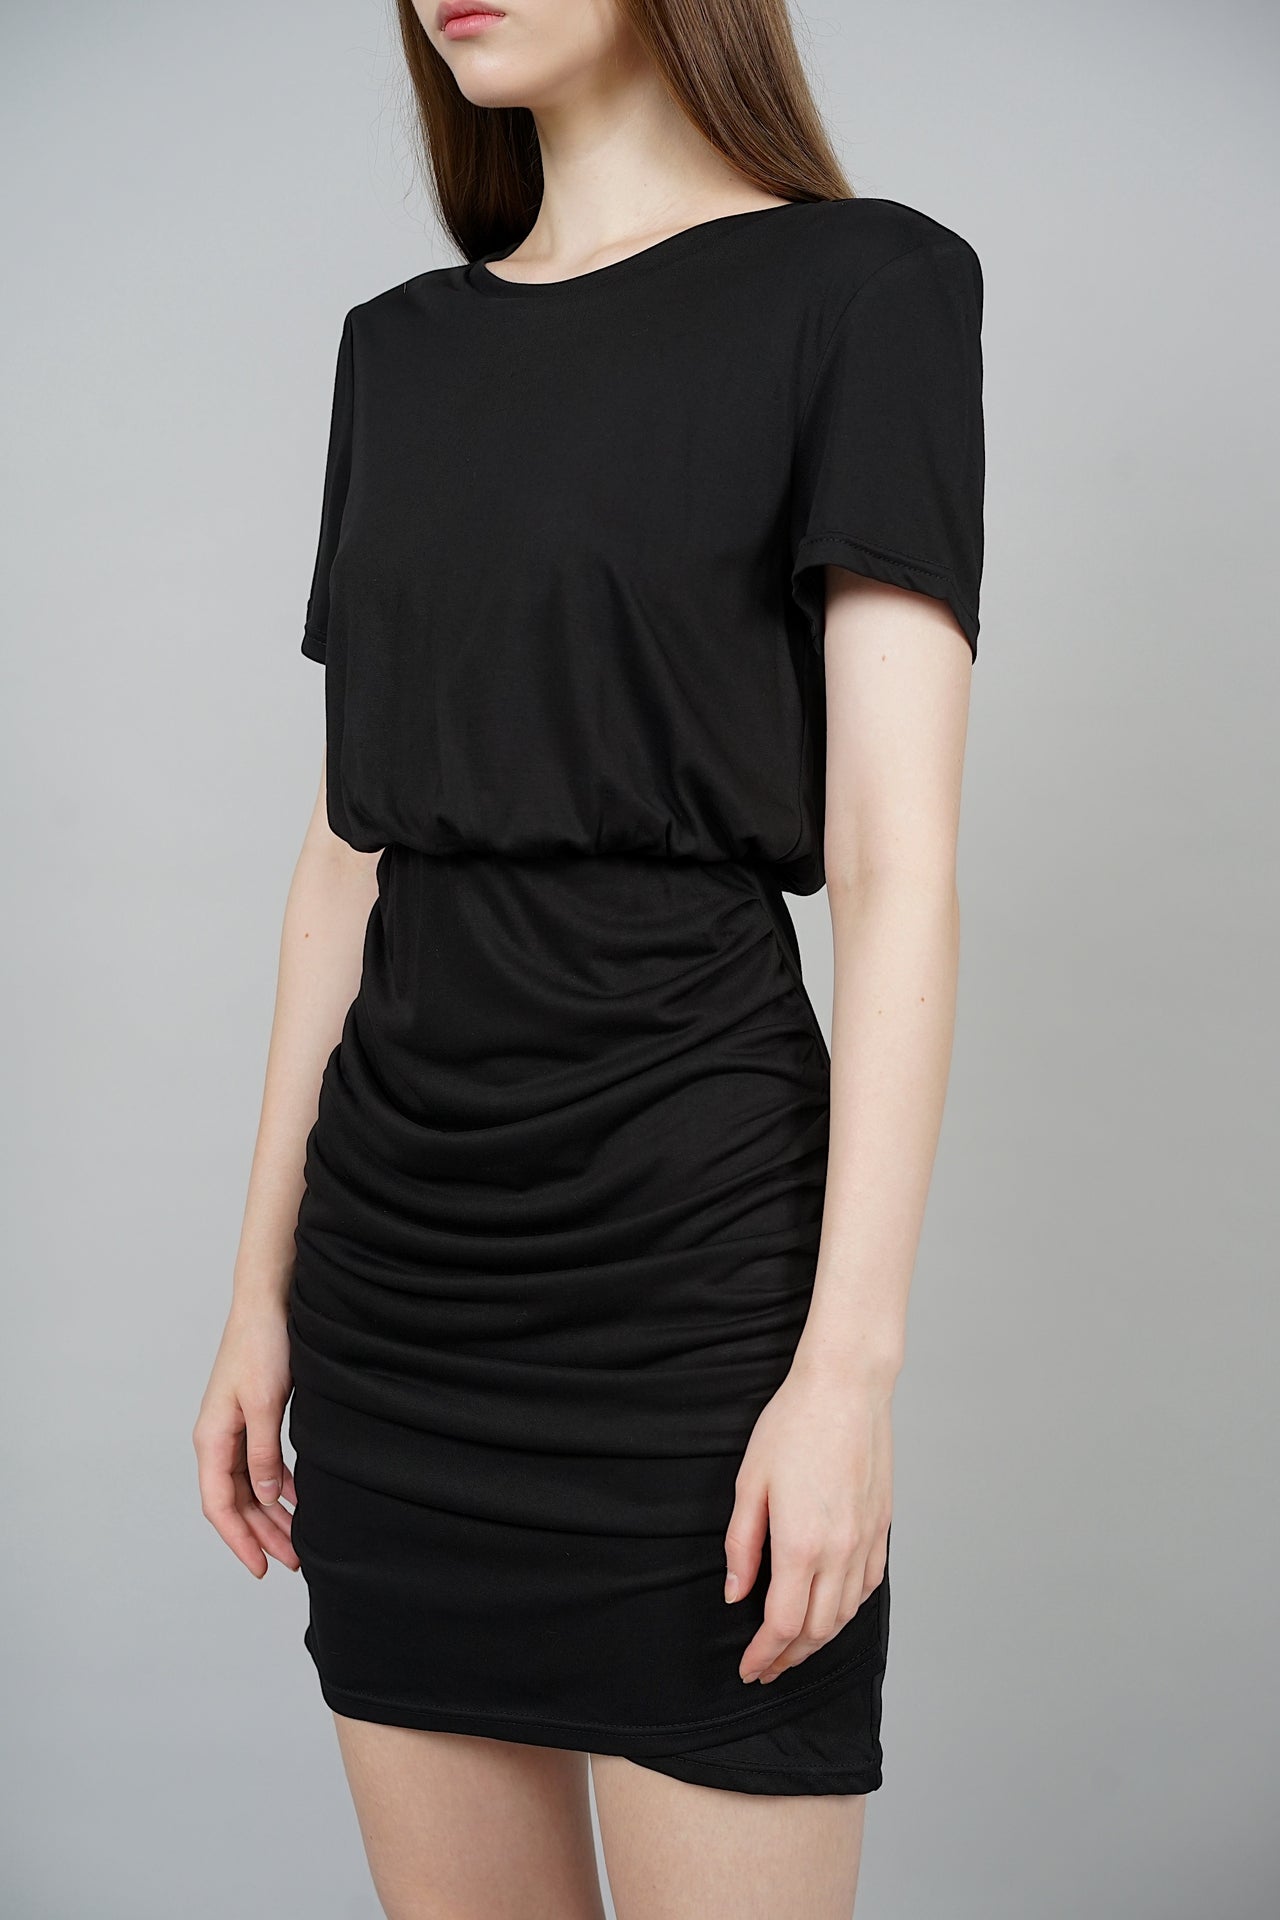 Liliana Mini Dress in Black